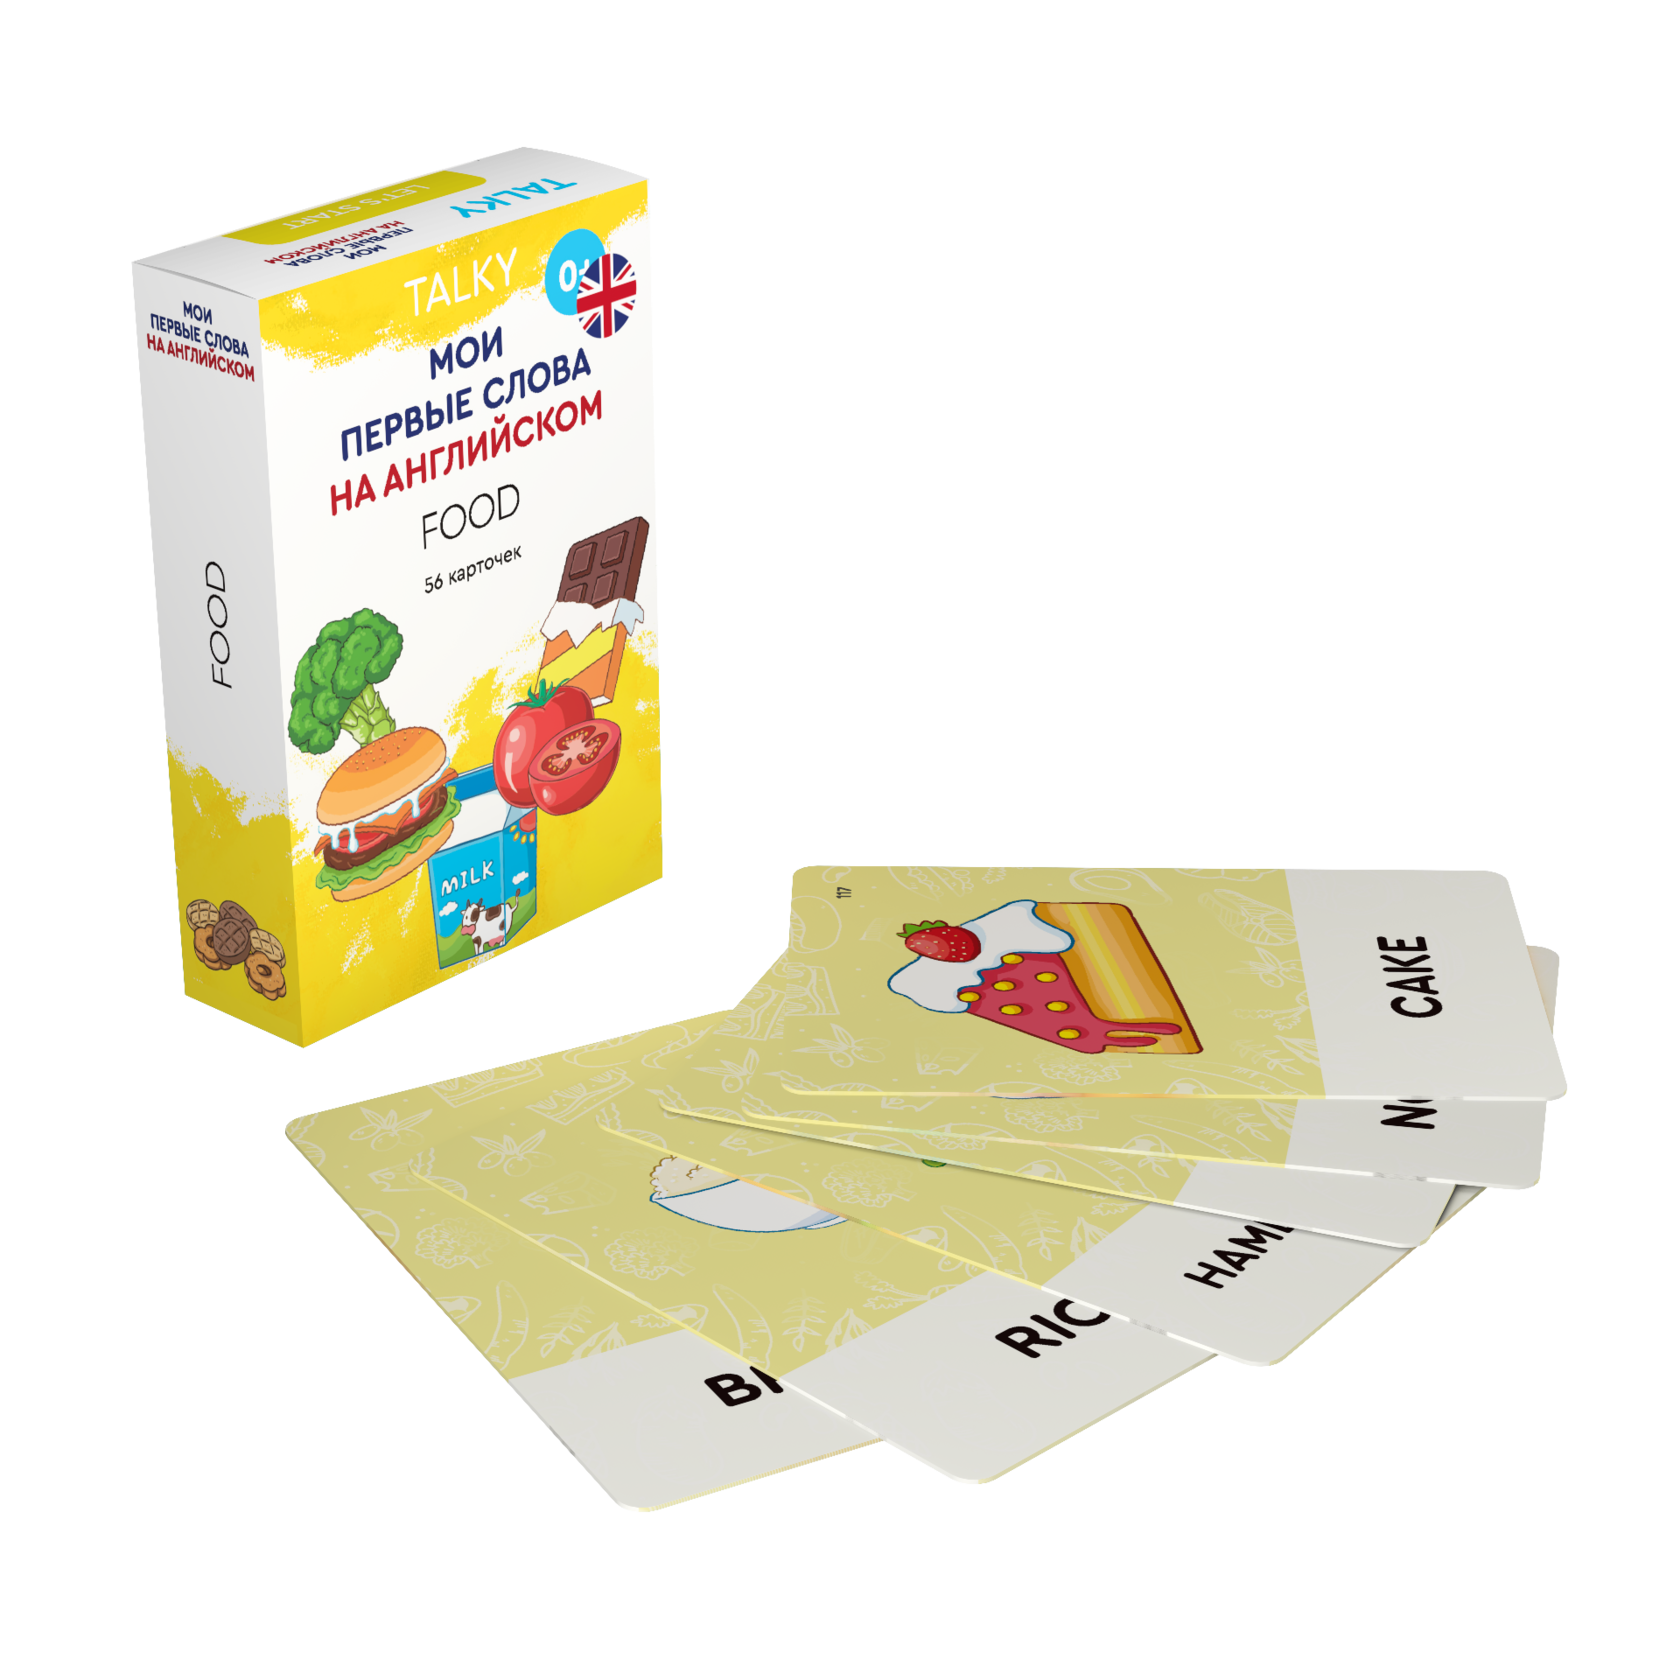 Развивающие карточки для детей LUMICUBE для TALKY, на англ. языке, еда, 56шт. KDTKE02-FOOD lumicube умные карточки talky на русском и английском языке страны 68 шт